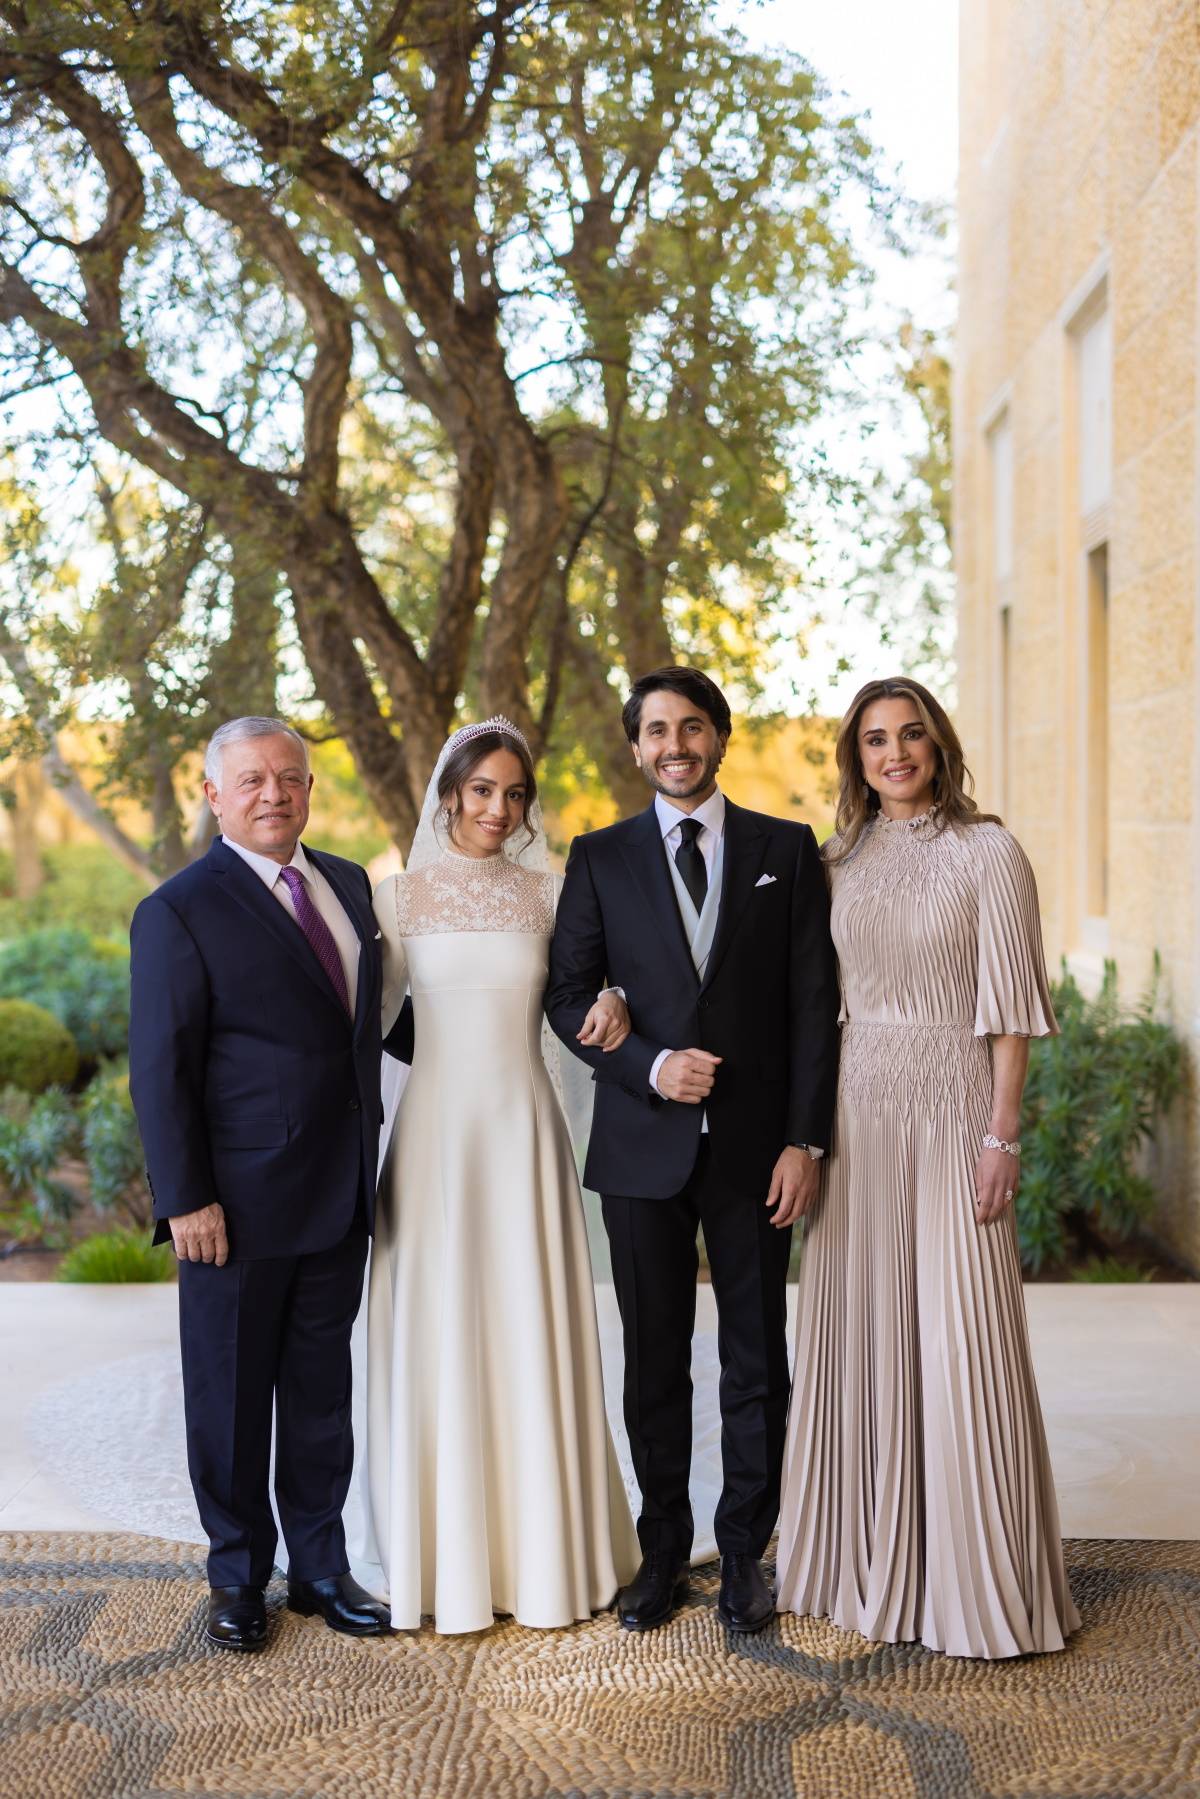 Jordańska księżniczka Iman poślubiła Jameela Alexandra Thermiotisa w sukni ślubnej paryskiego domu mody Dior